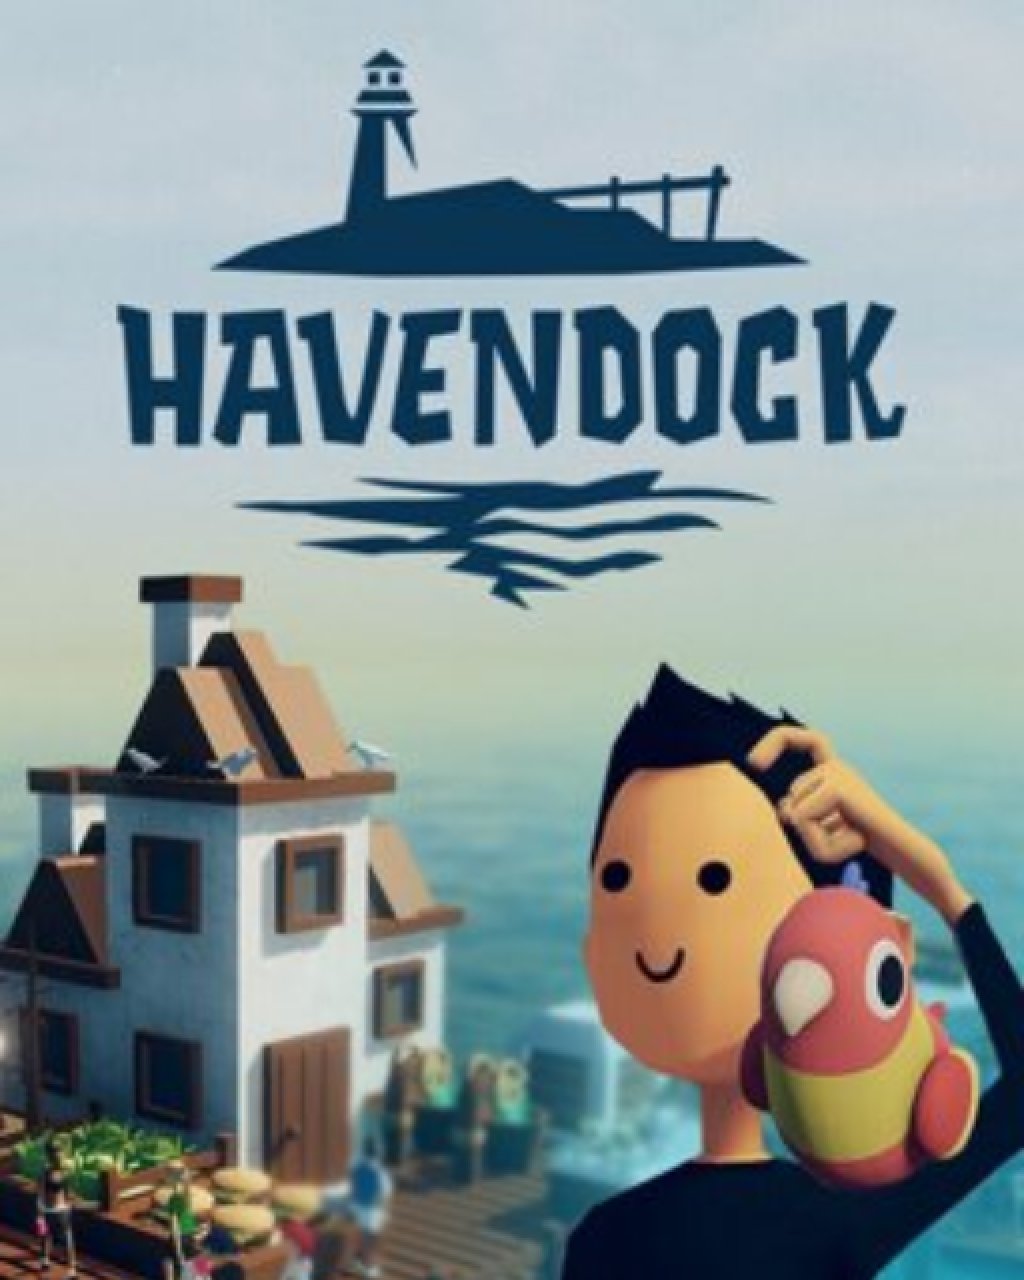 Havendock